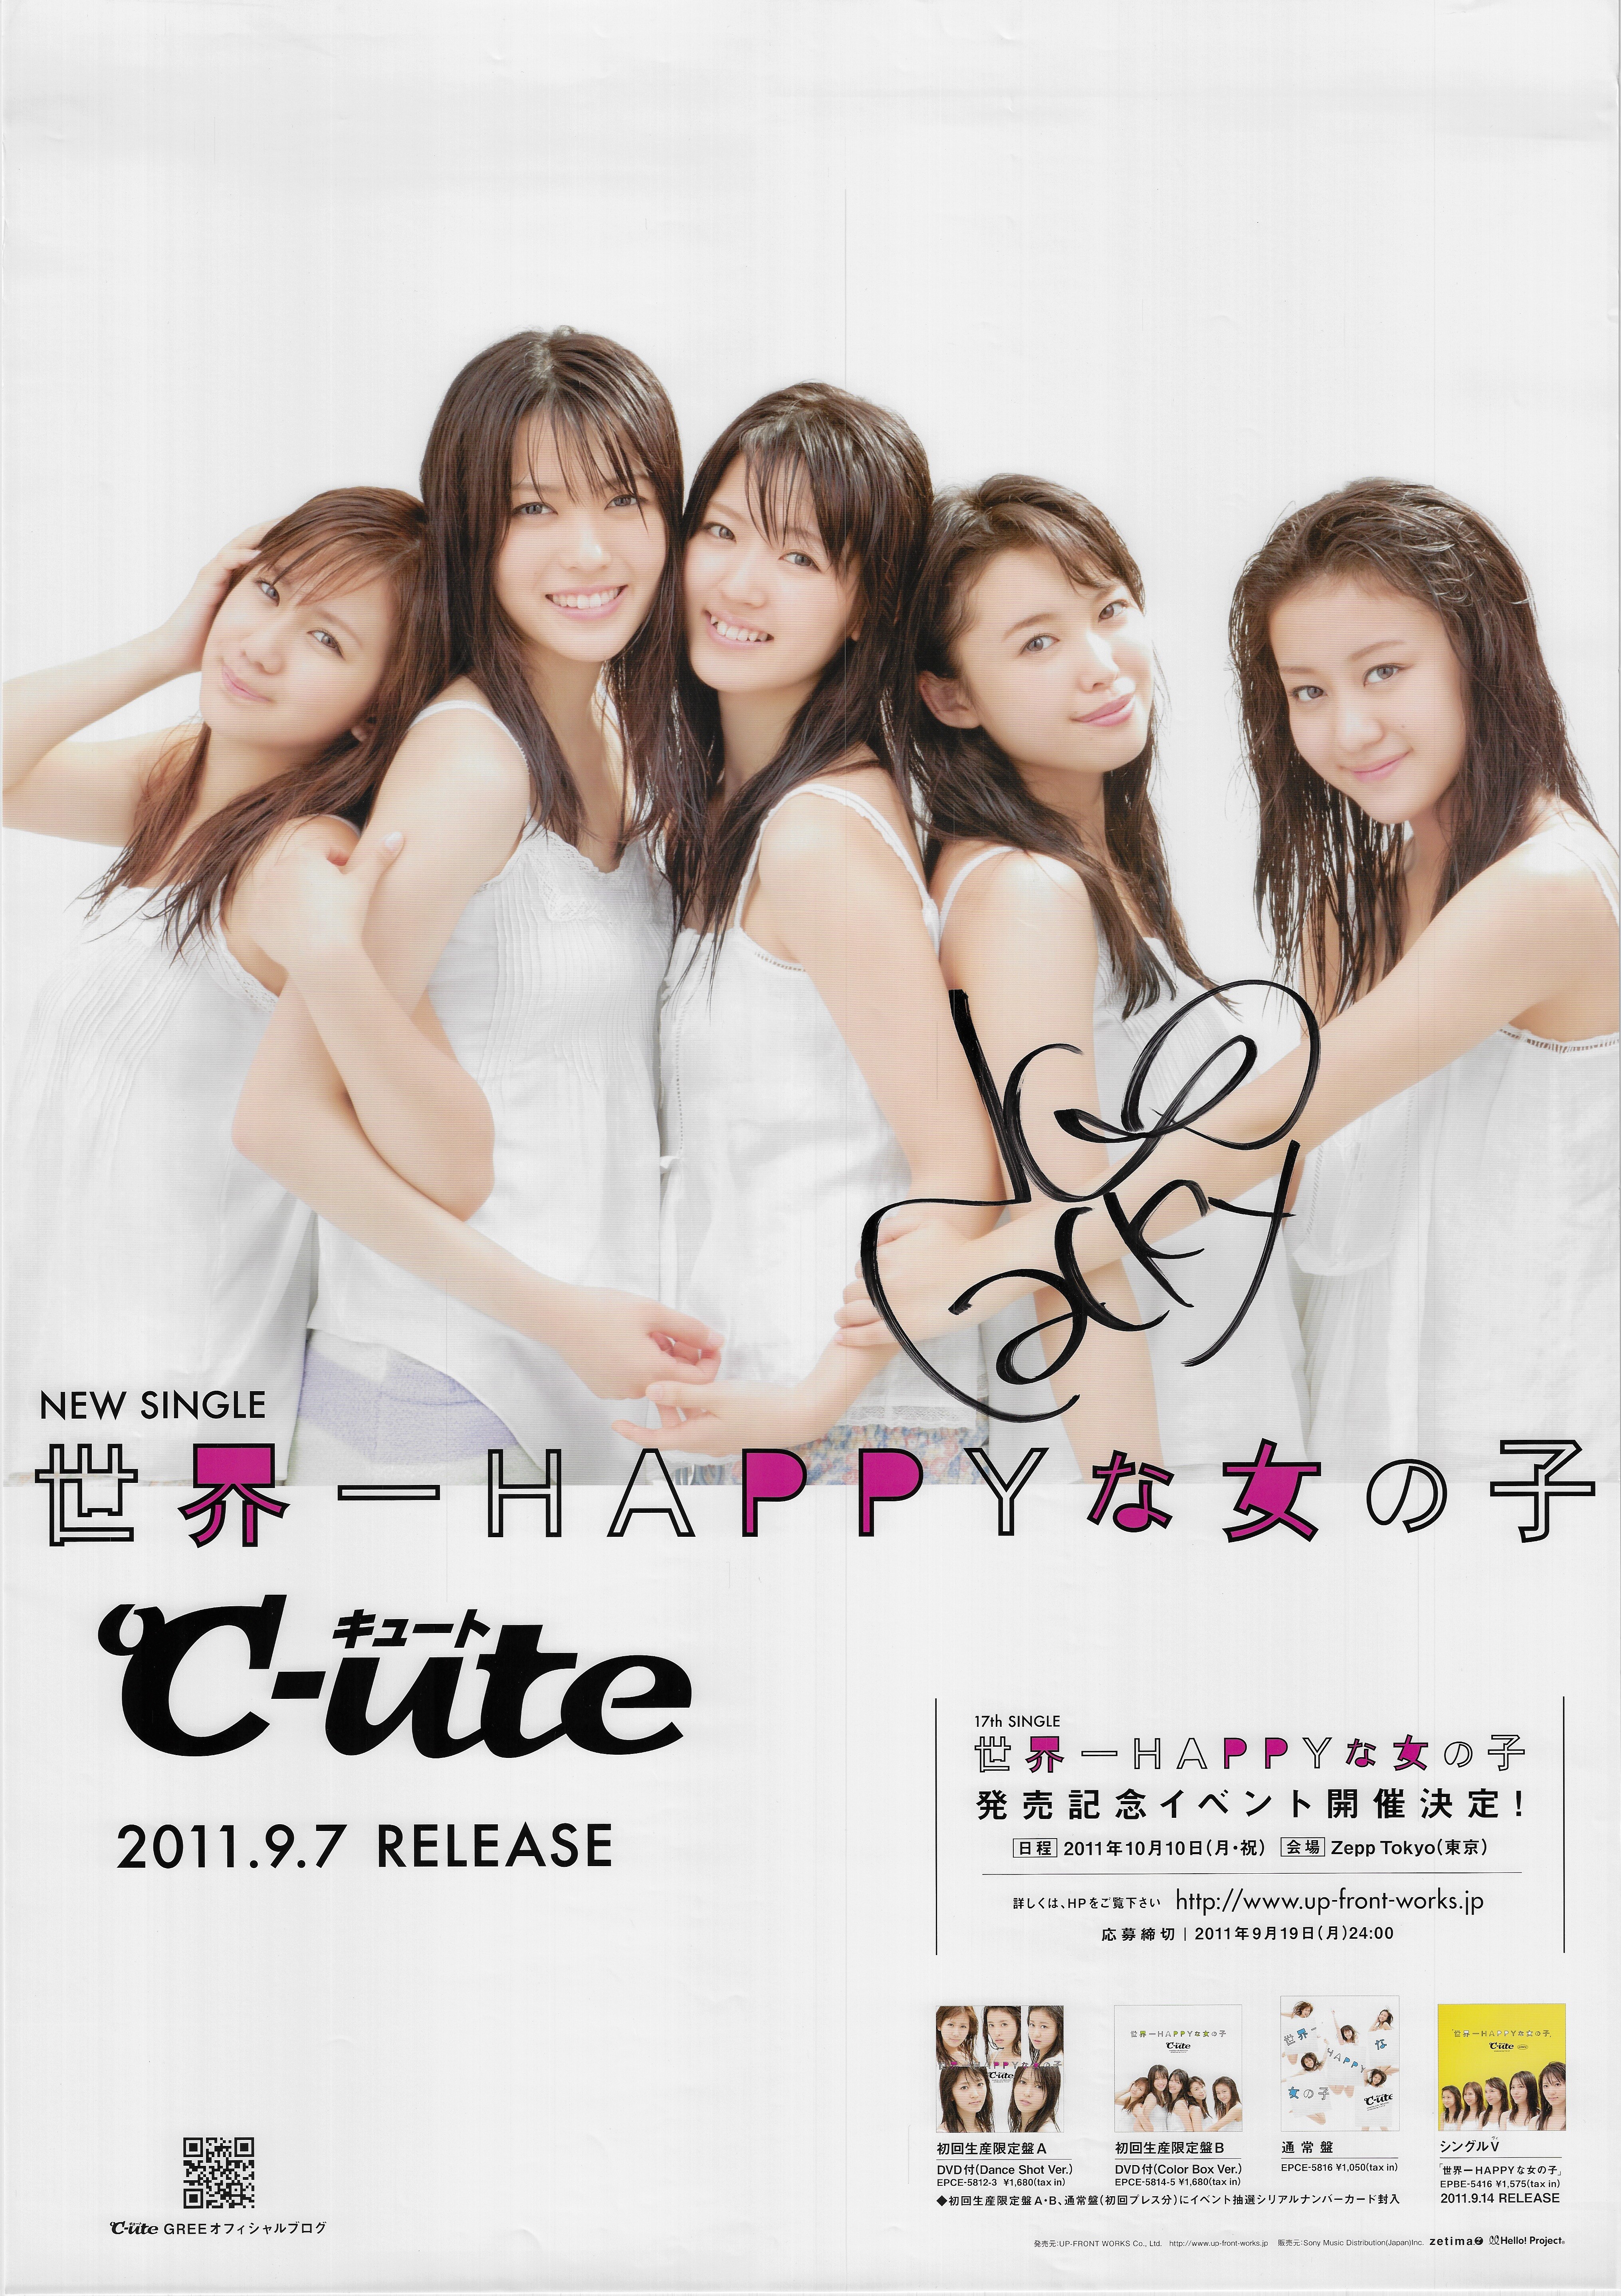 Saki Nakajima Signed Cute C Ute World Hyappy Girl B2 Poster Mandarake Online Shop